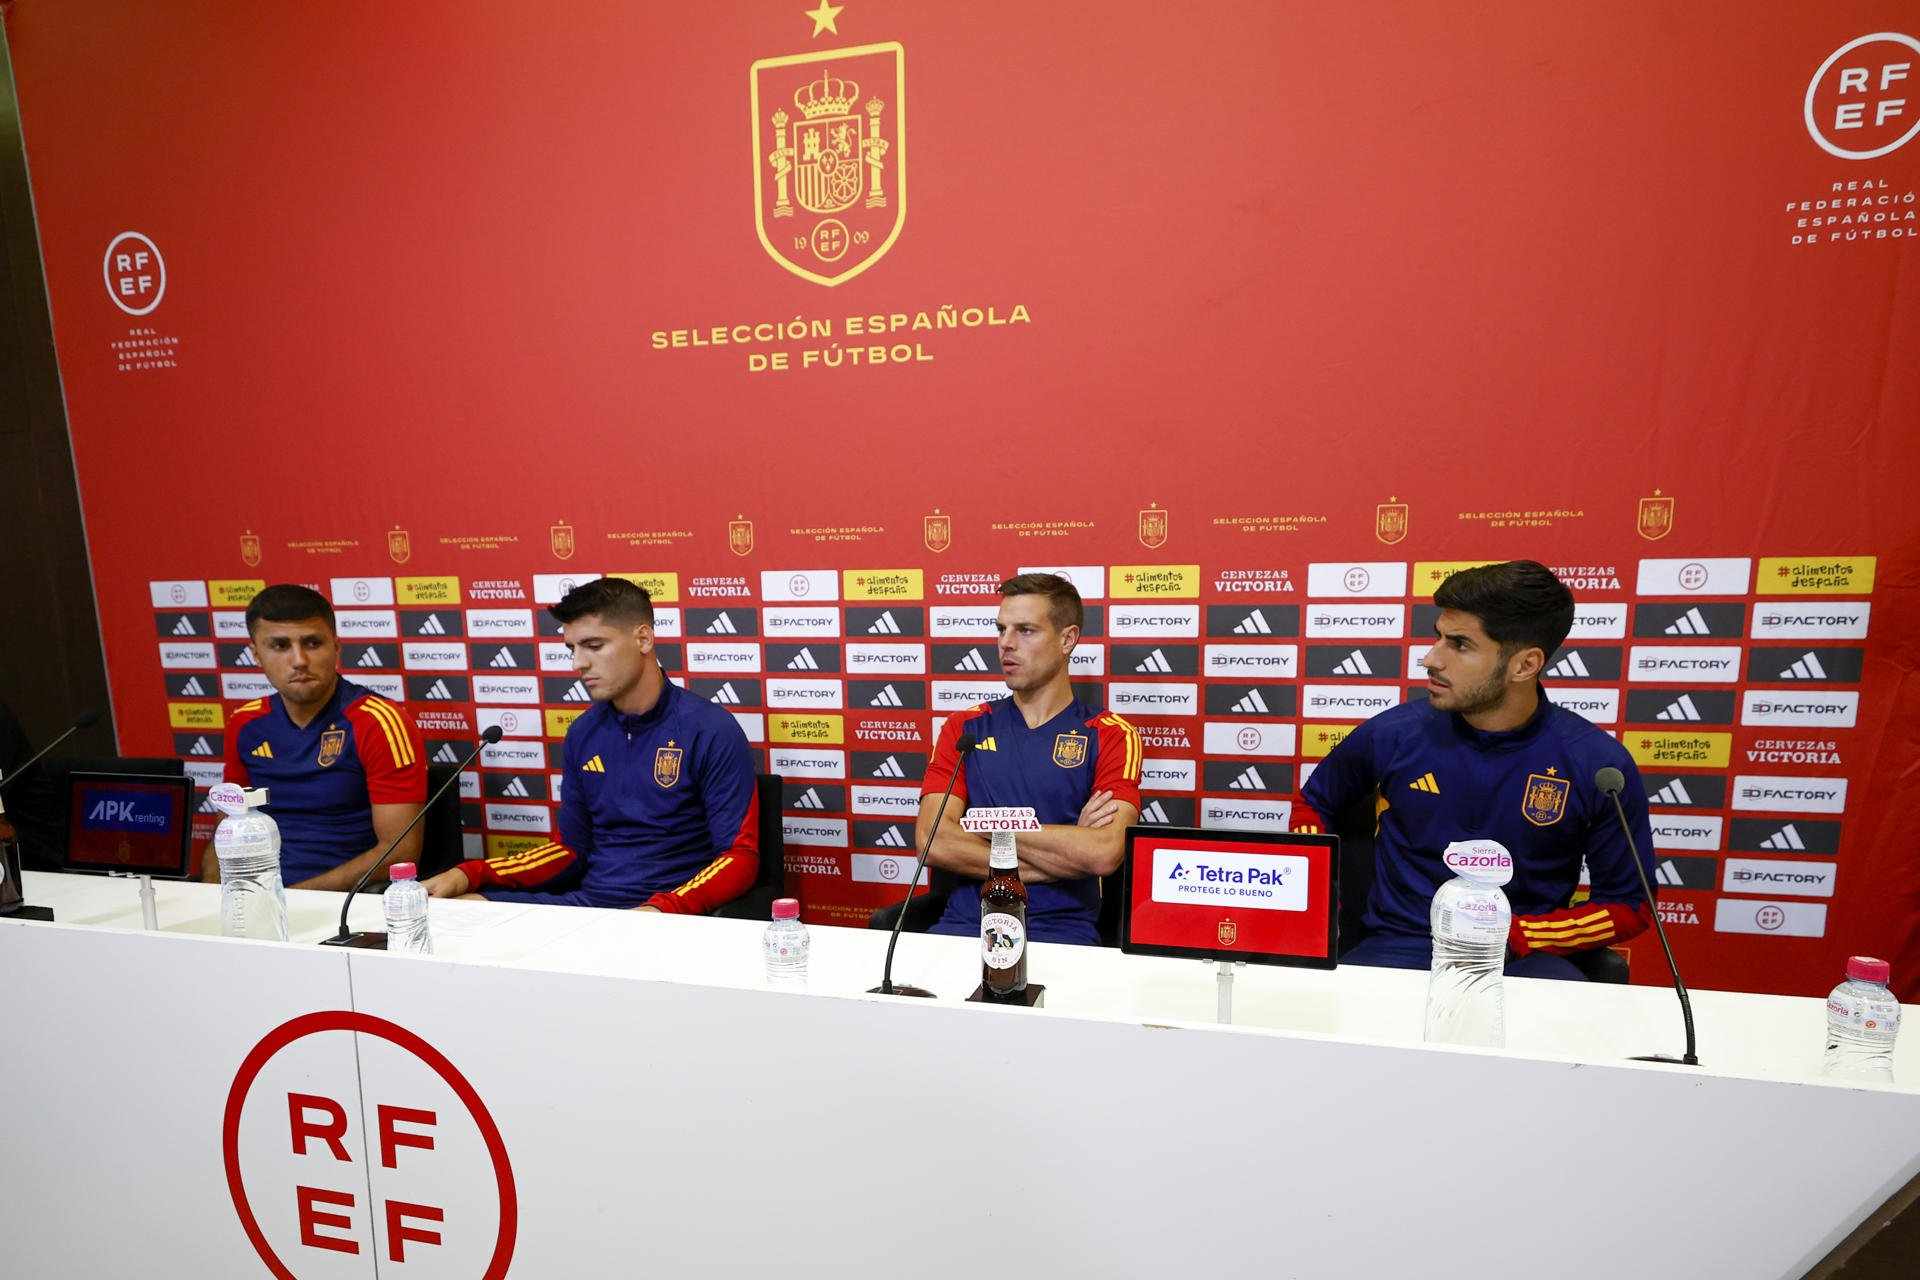 Els jugadors de la selecció espanyola es posicionen contra Rubiales: "No ha estat a l'altura"